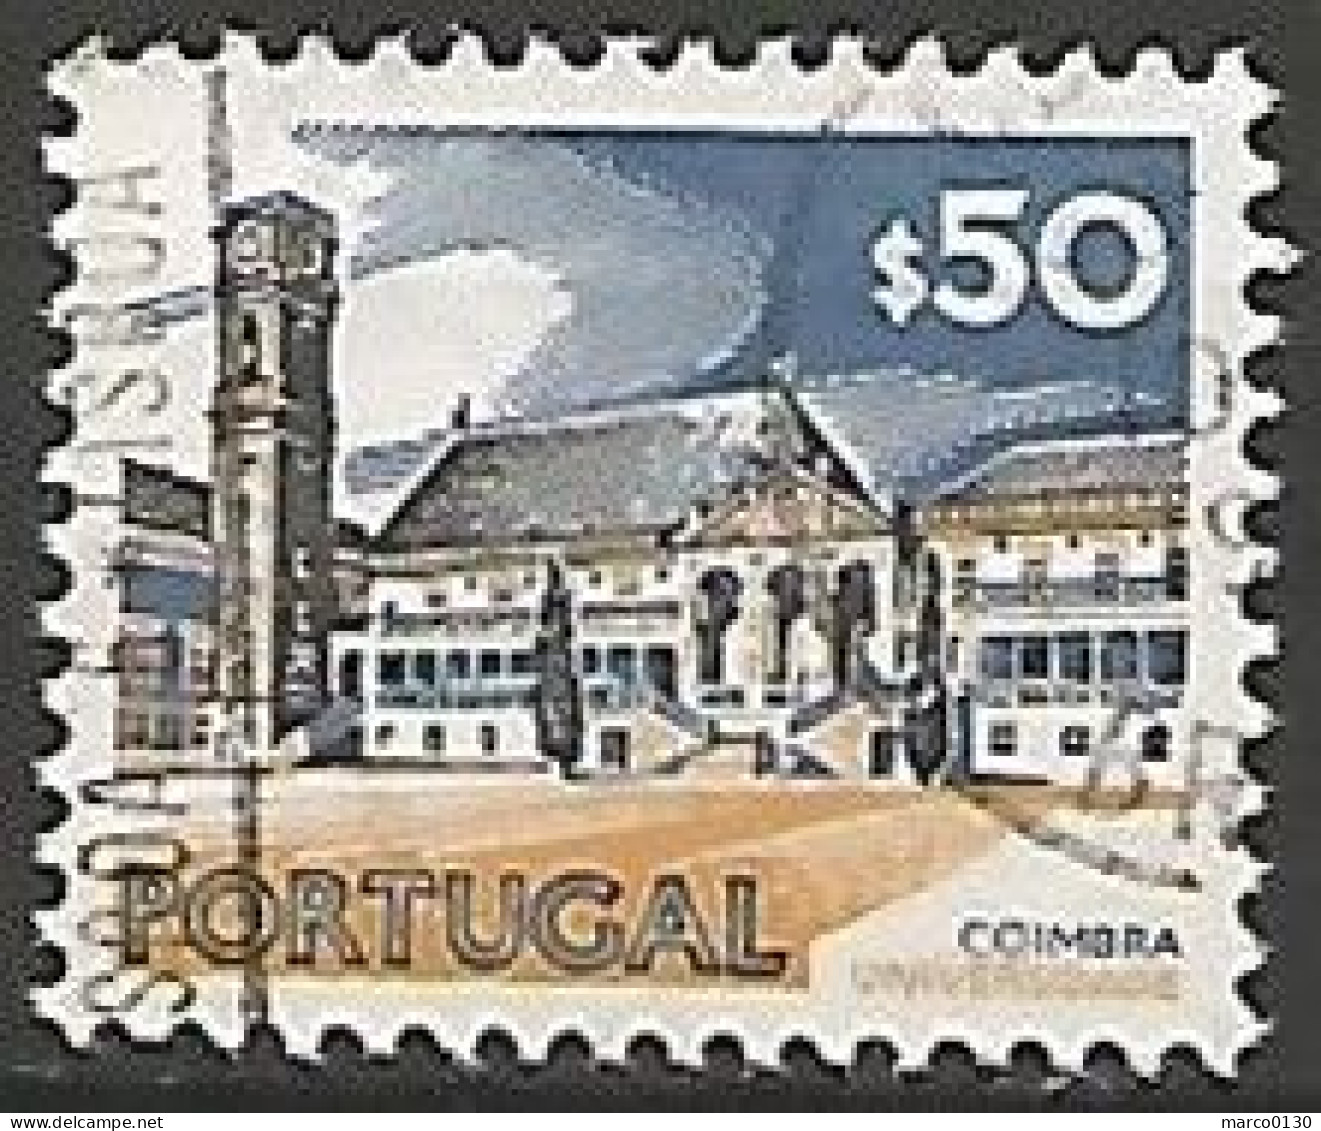 PORTUGAL N° 1136 OBLITERE CTT 1972 - Oblitérés